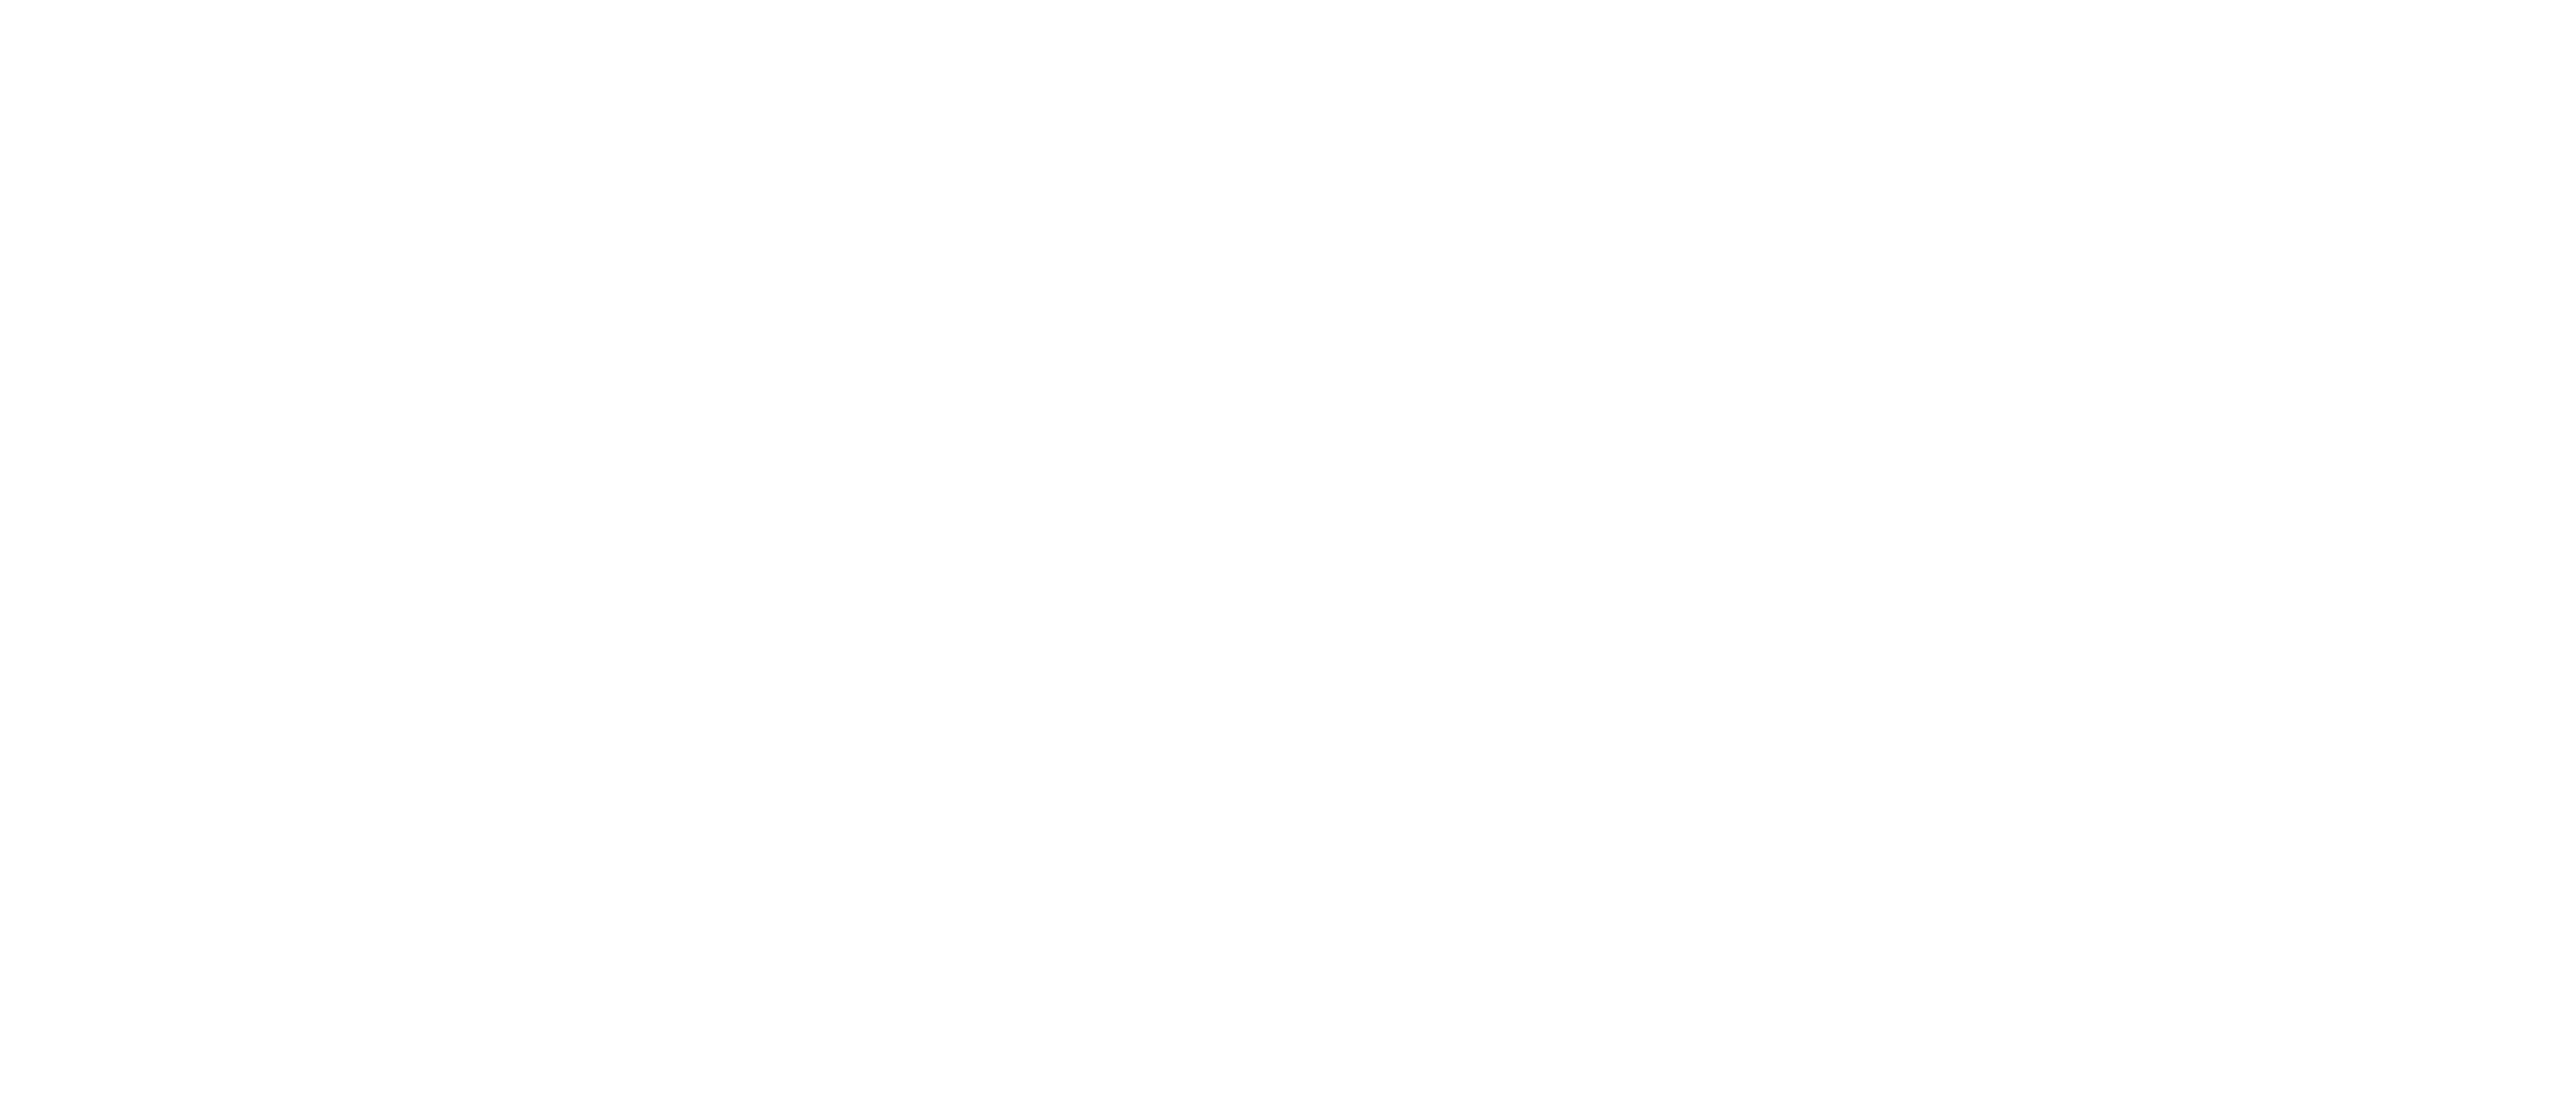 Walk Smart. Arrive Alive DE